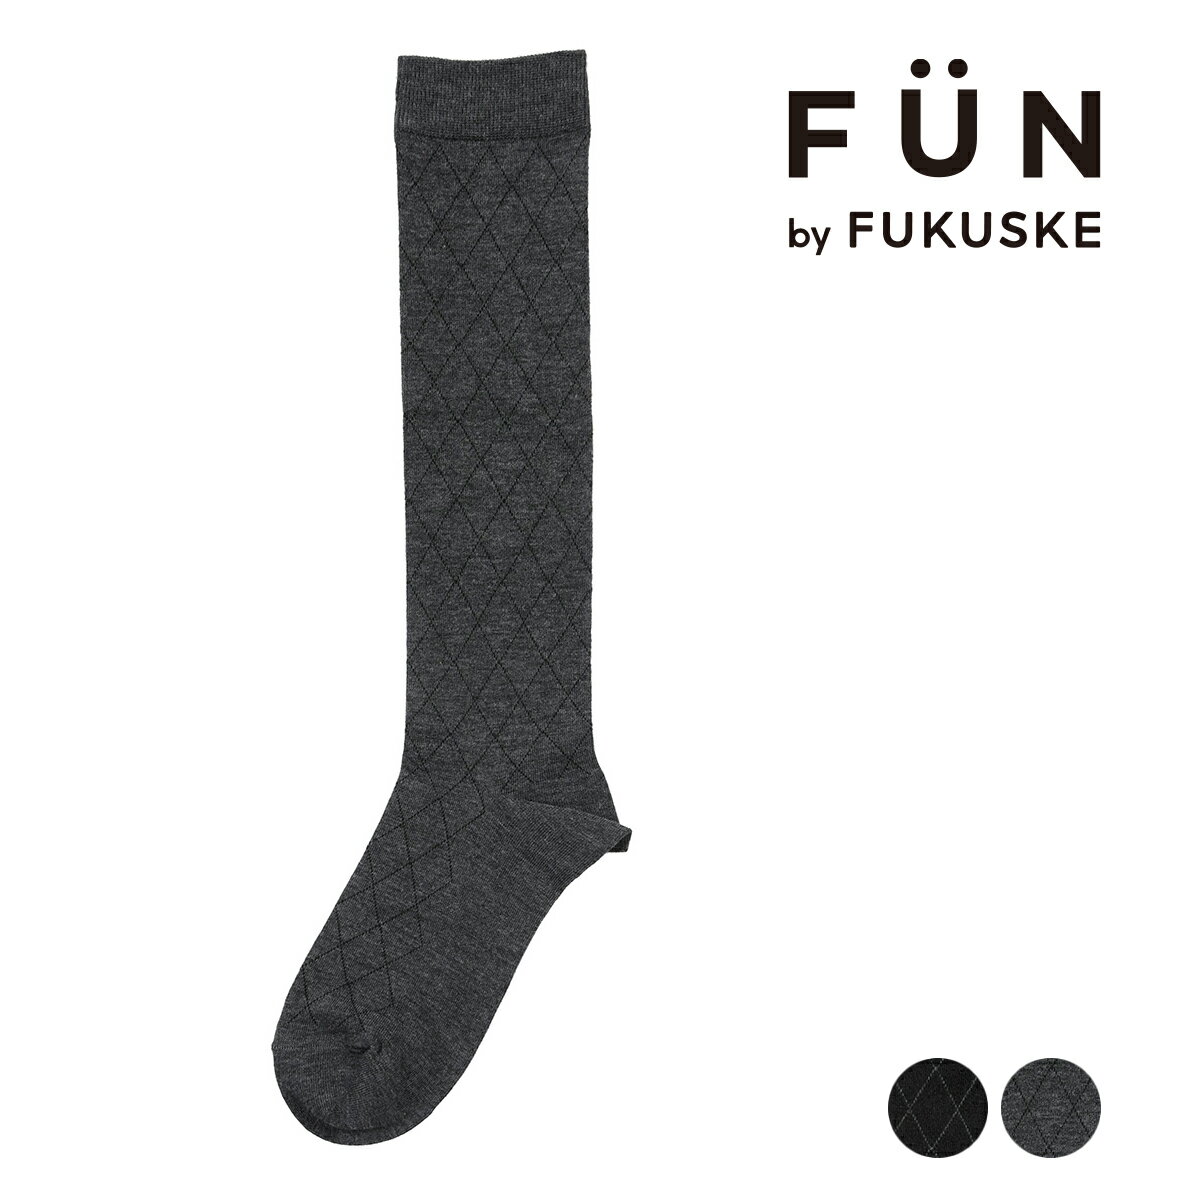 福助 公式 靴下 ハイソックス レディース fukuske FUN ダイヤ柄 つま先かかと補強 4362-33L婦人 女性 フクスケ fukuske